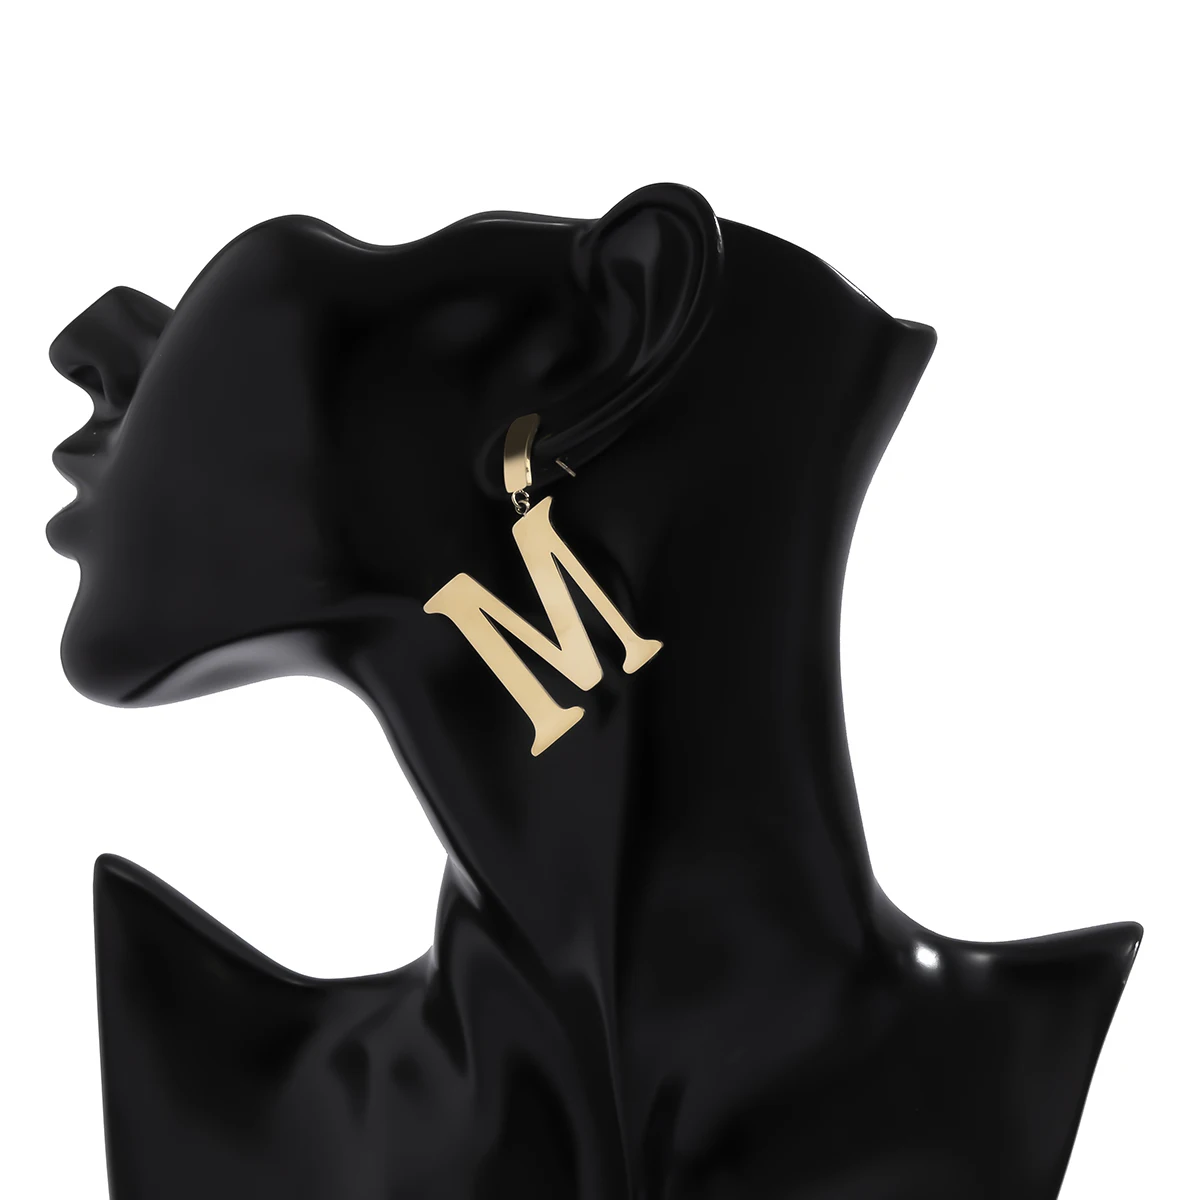 Женские серьги-подвески IngeSight.Z из нержавеющей стали в стиле панк с буквой М яркие